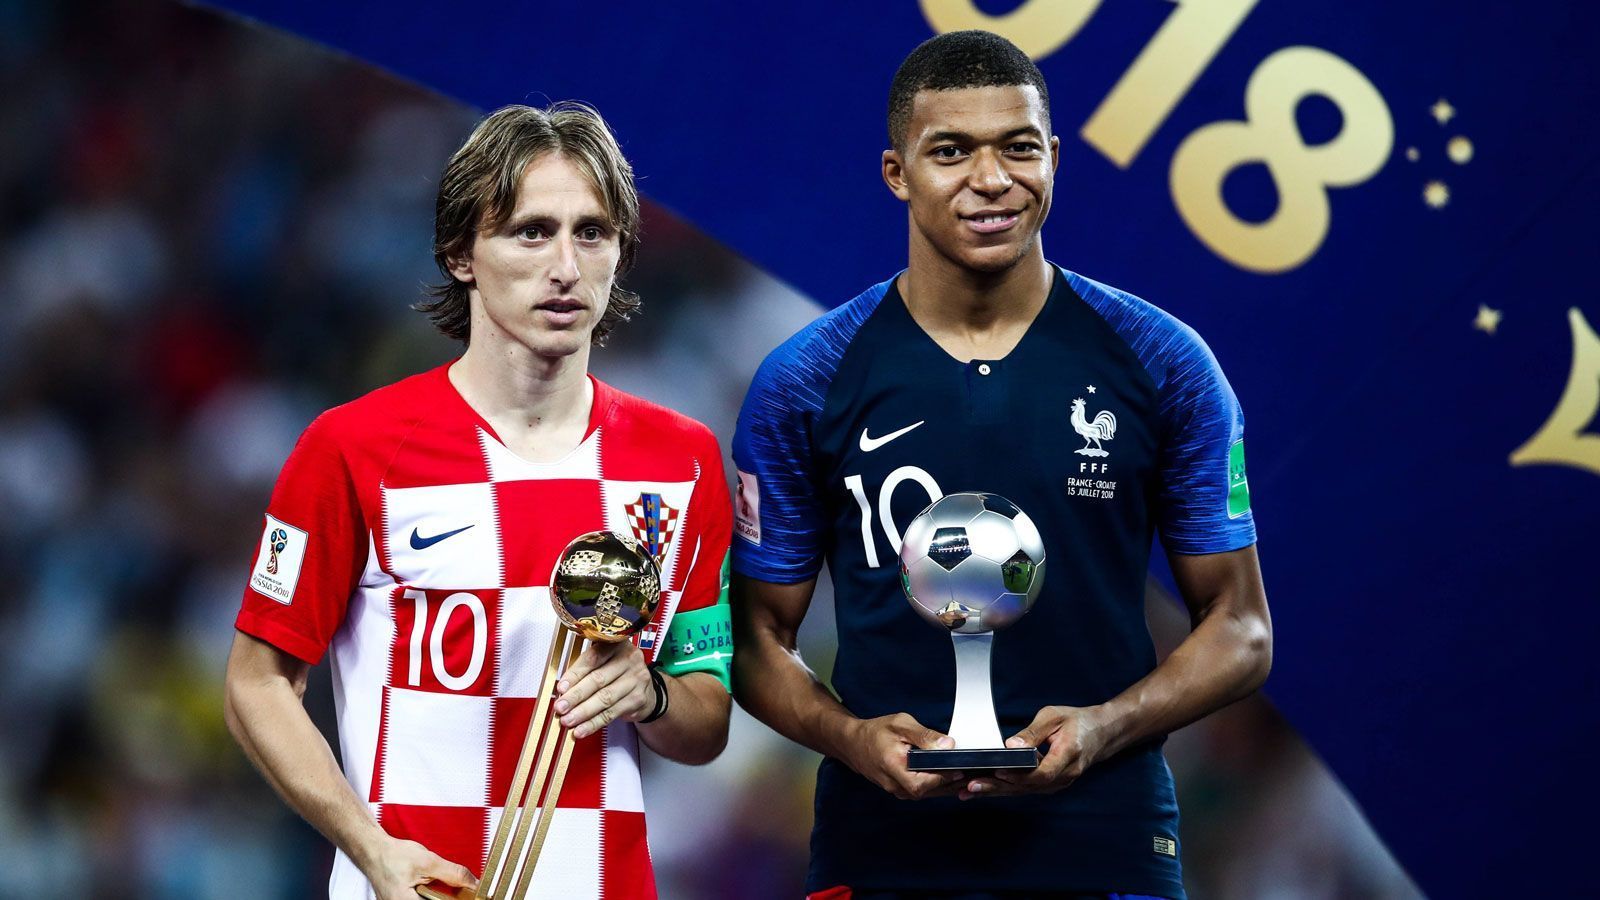 
                <strong>Die Gewinner der Awards bei der WM 2018</strong><br>
                Frankreich ist Weltmeister - das weiß so ziemlich jedes Kind auf der Erde. Doch bei der WM 2018 wurden von der FIFA noch viele andere Ehrungen vergeben. ran.de zeigt die Gewinner der Awards - mit dabei sind auch die beiden Herren auf diesem Bild.
              